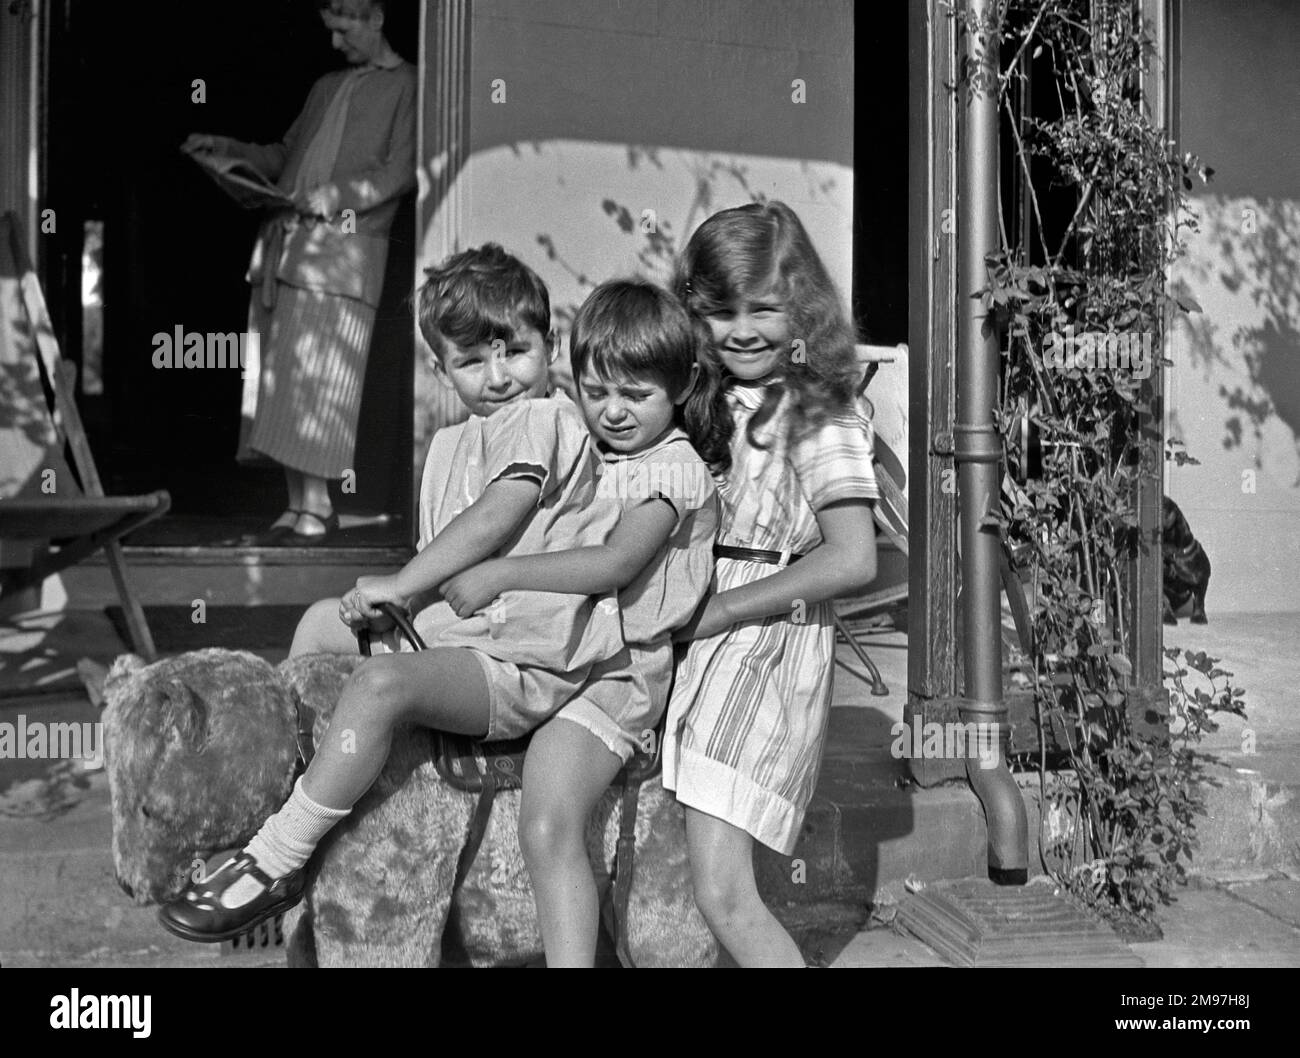 Trois enfants assis sur un ours en peluche dans un jardin, avec une femme dans une porte ouverte en arrière-plan. Banque D'Images